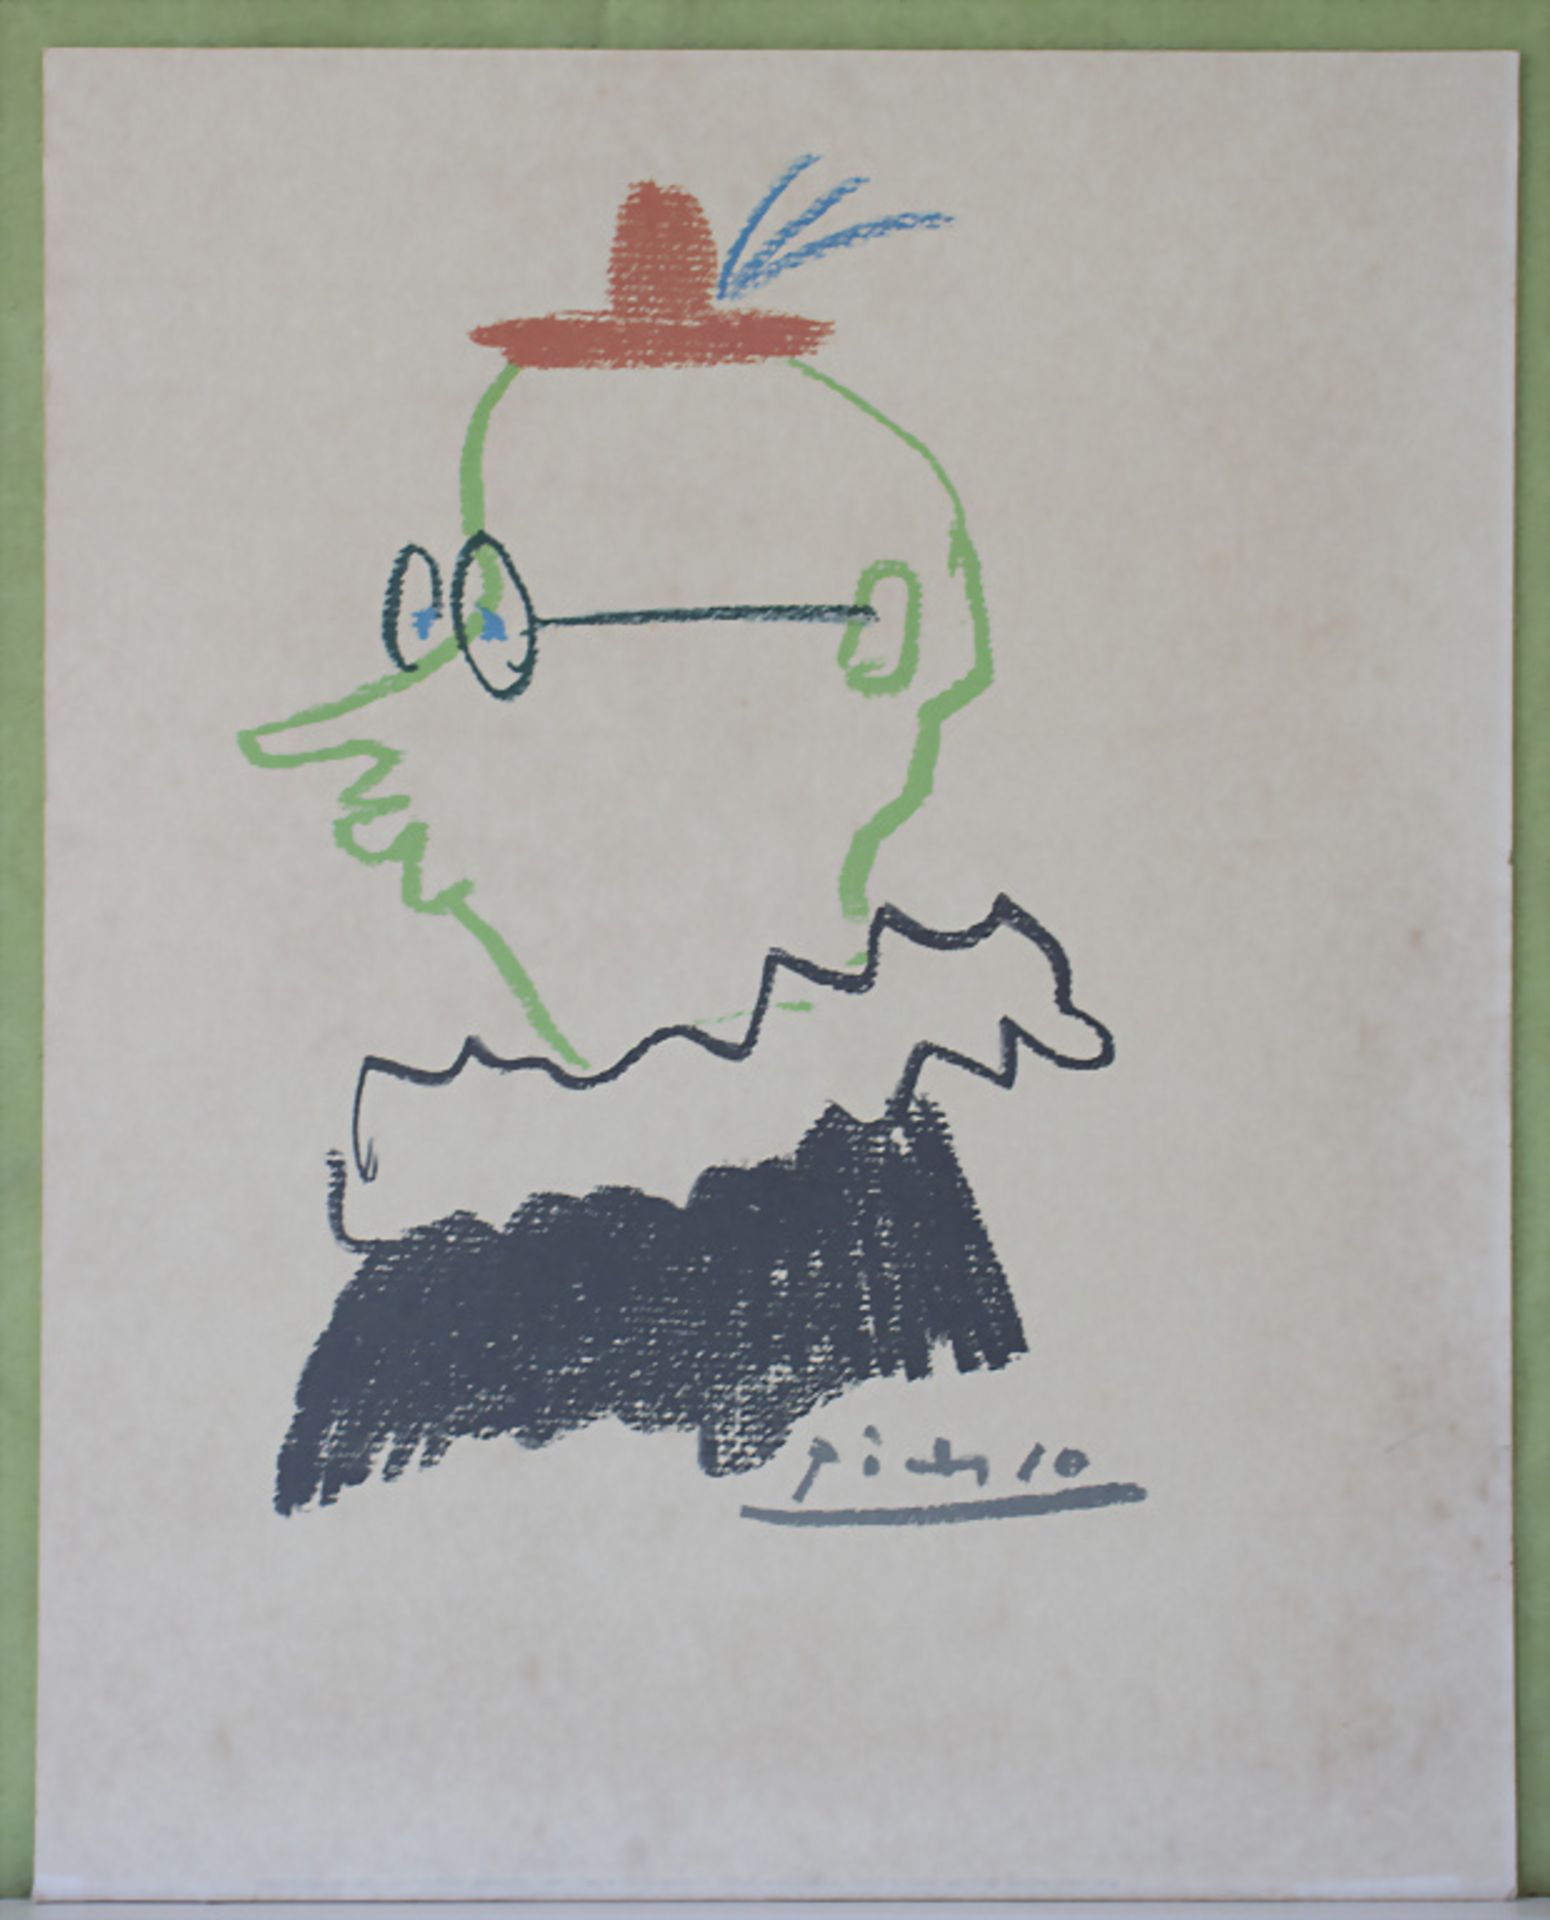 Pablo Picasso (1881-1973), 'L'ami' / 'The friend', 1988